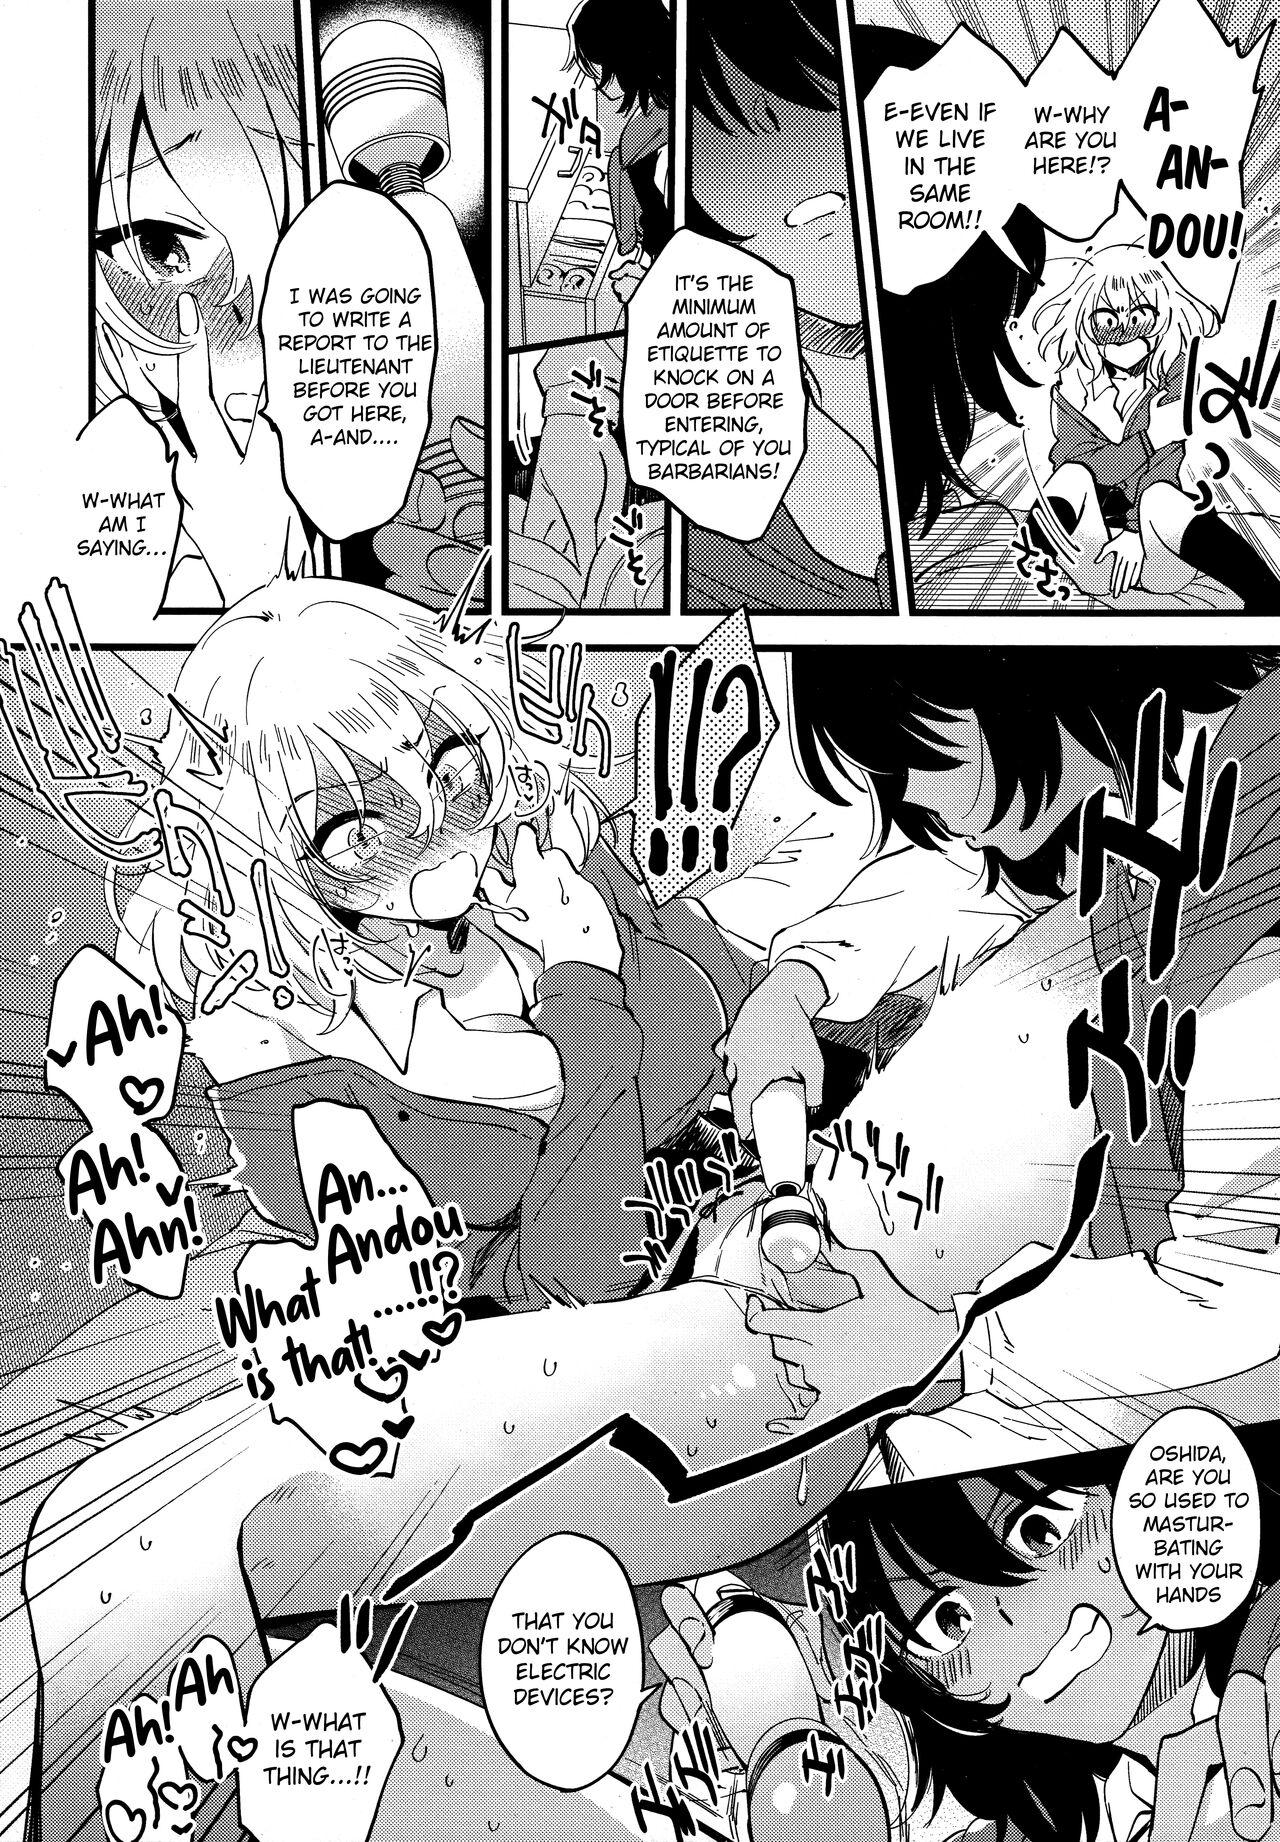 Women Fucking AnOshi, Nakayoku! - Girls und panzer Insertion - Page 9